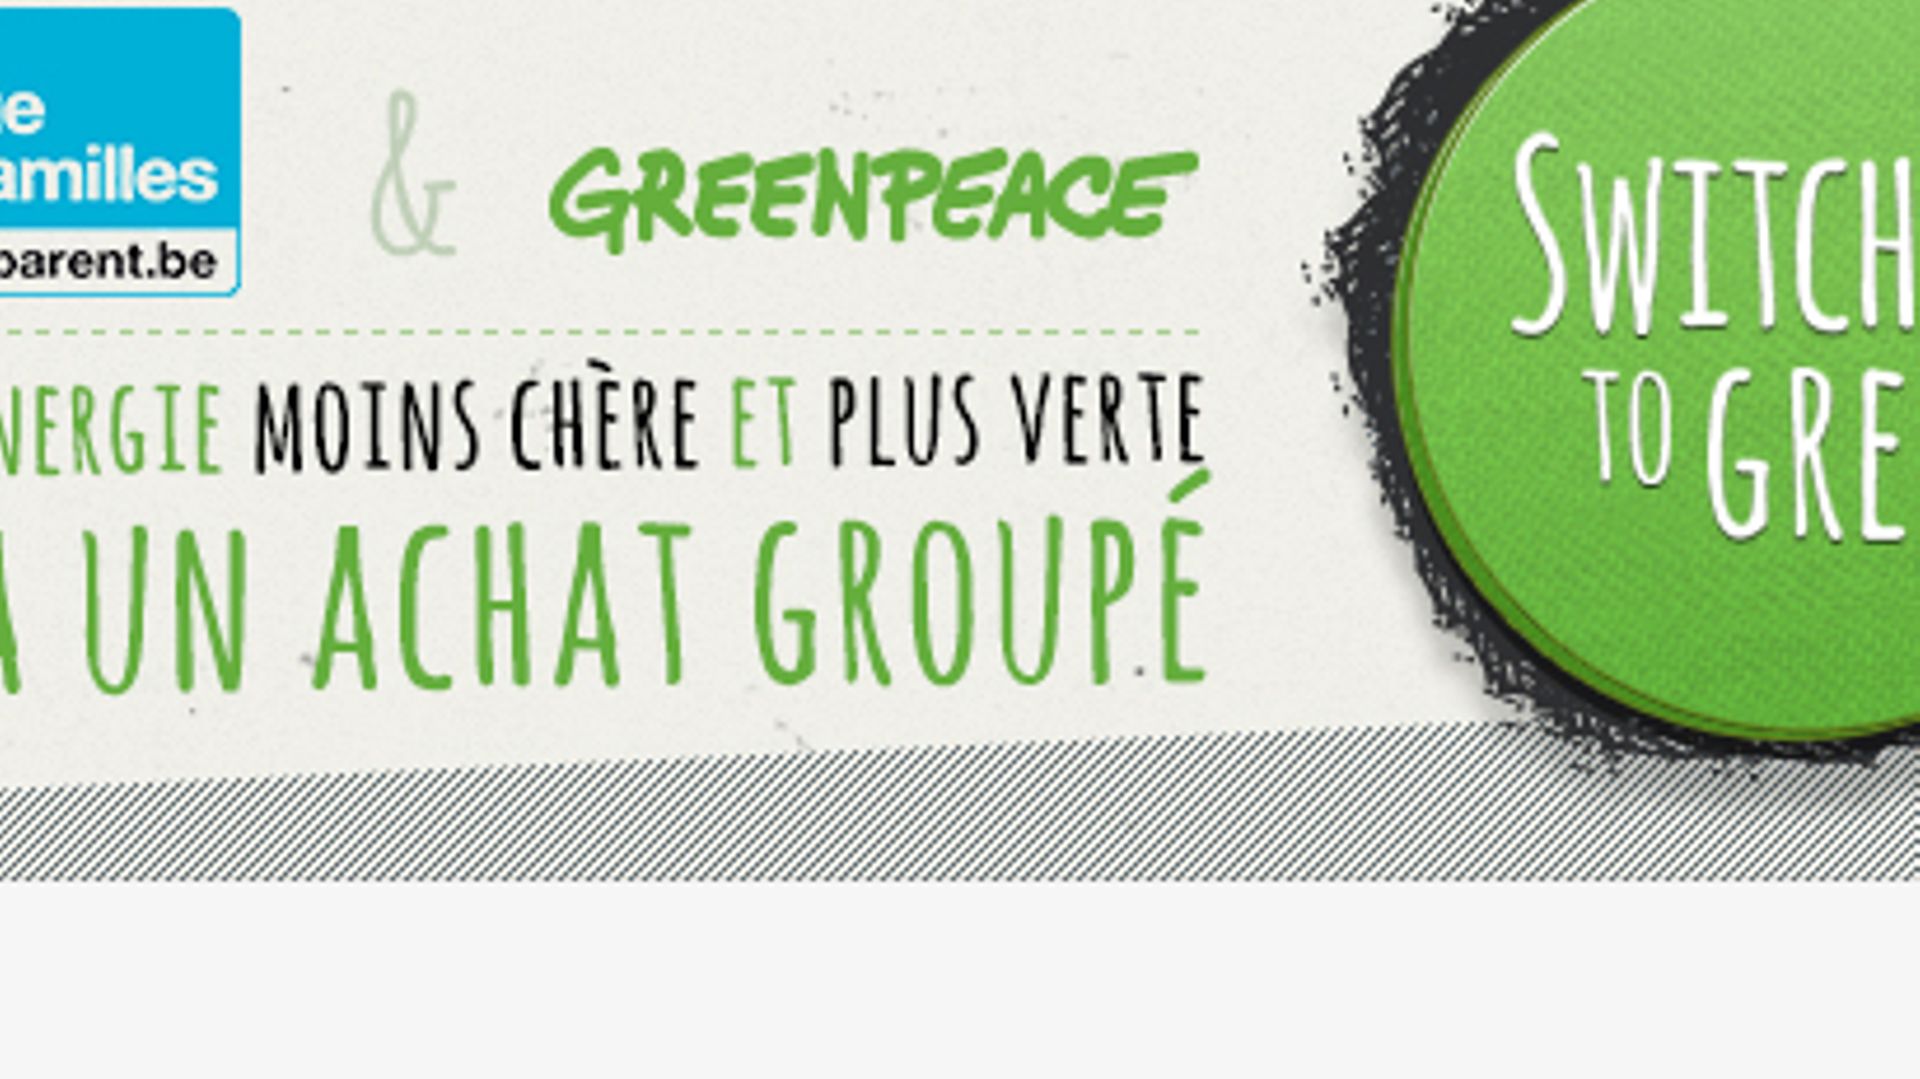 greenpeace-et-ligue-des-familles-lancent-a-leur-tour-1-achat-groupe-d-energies